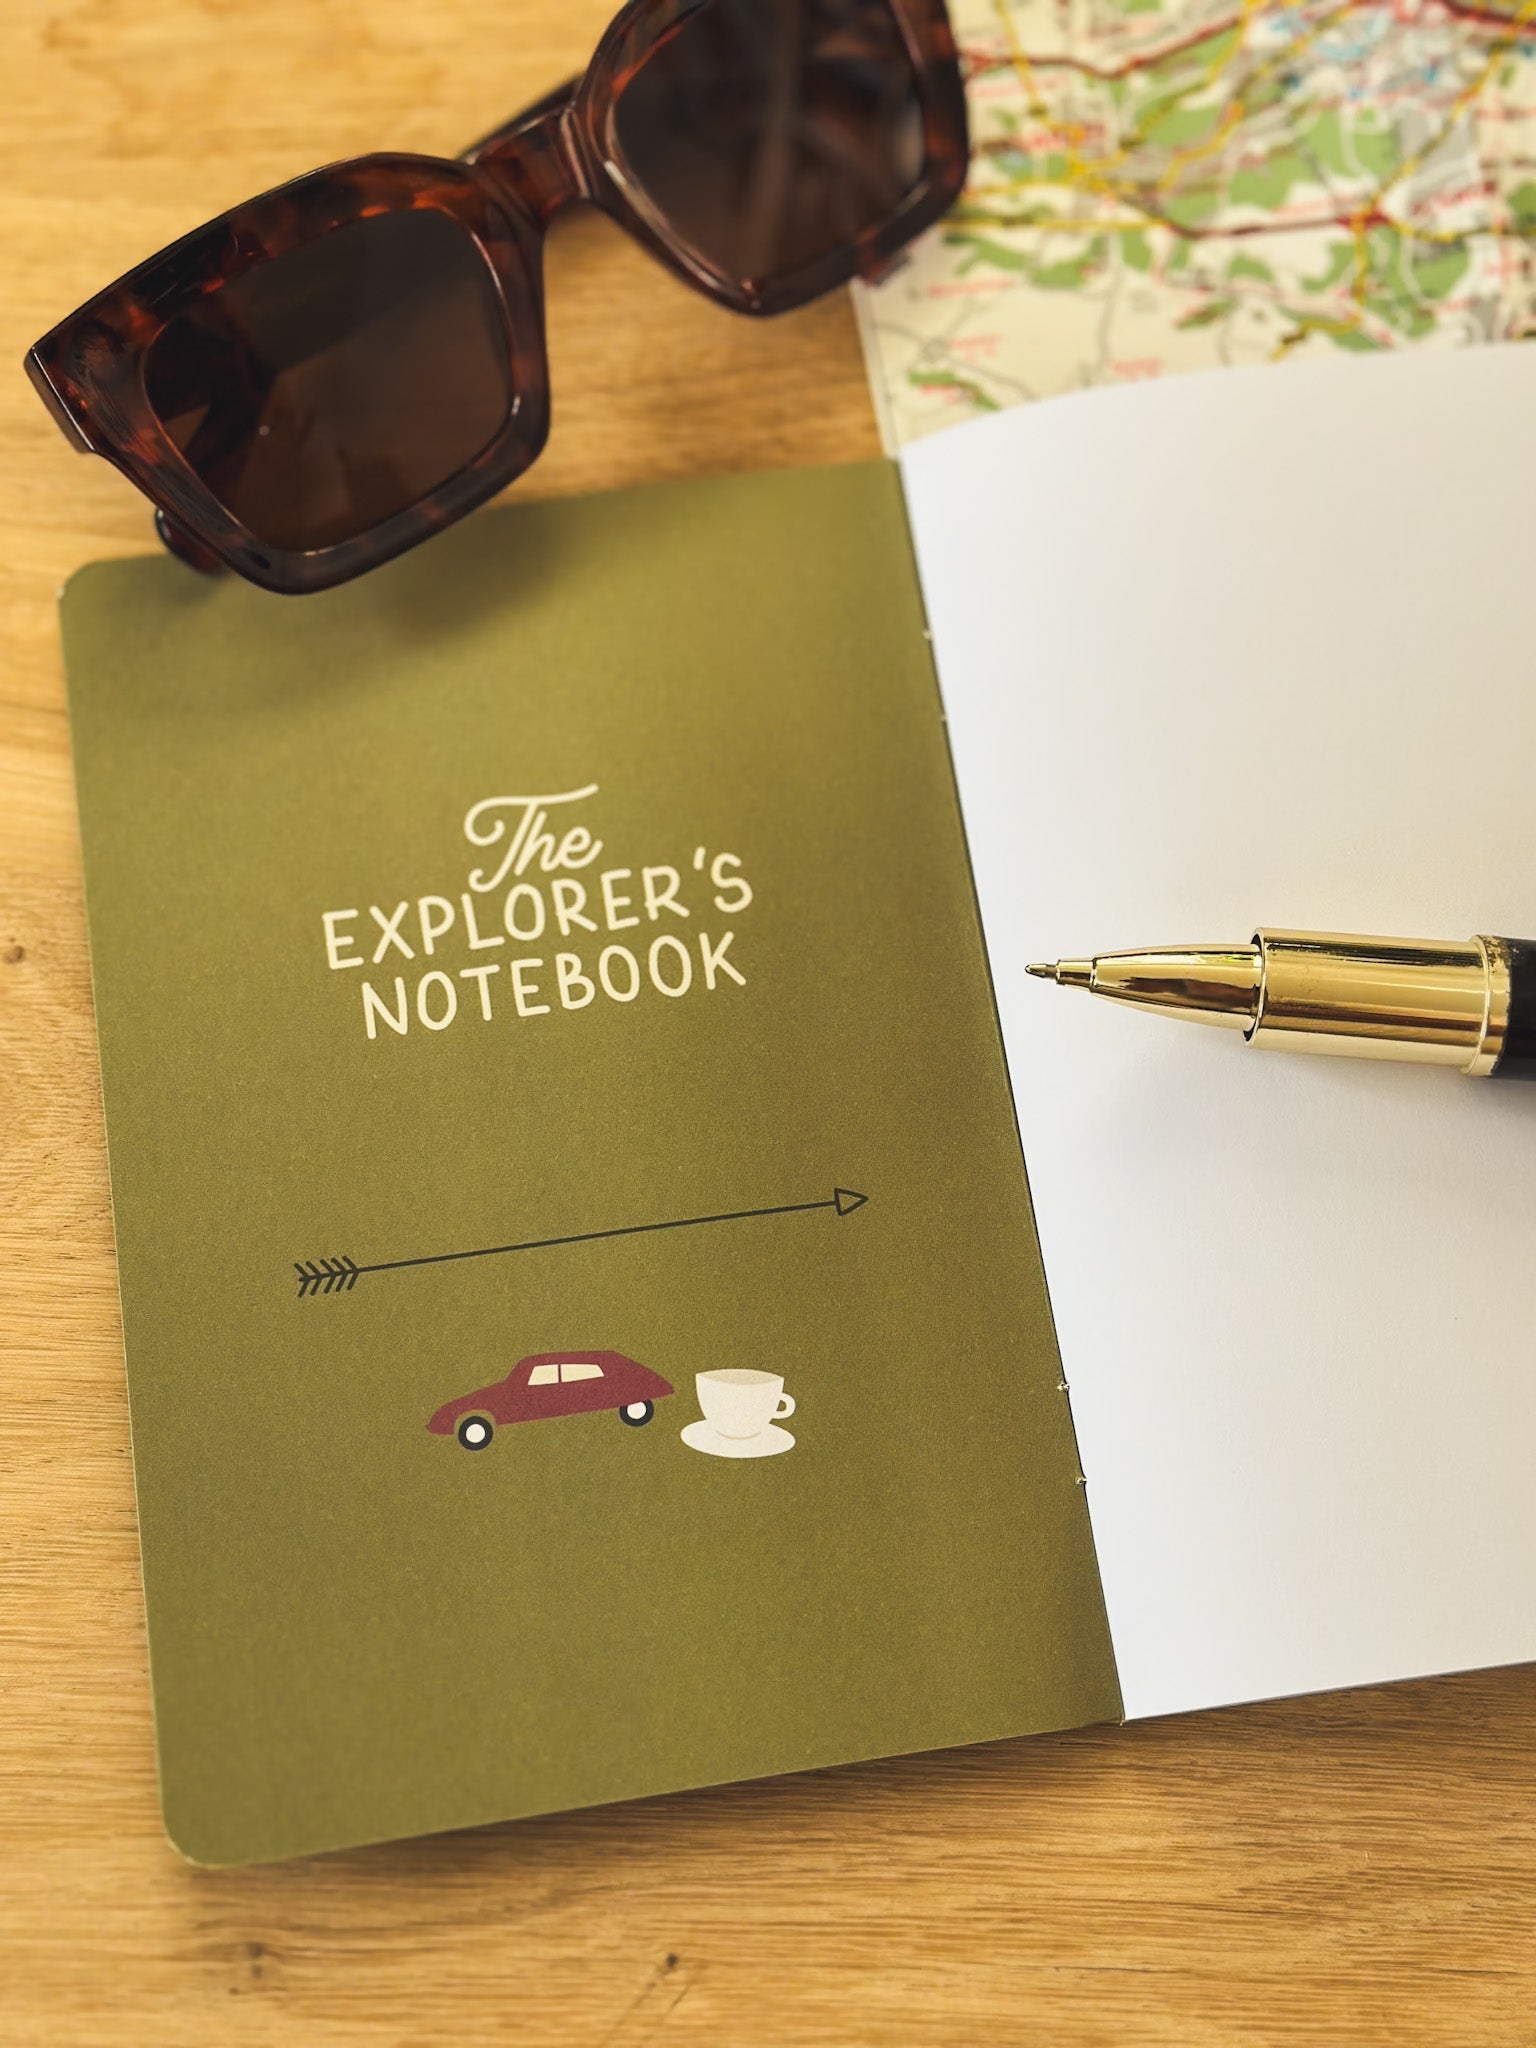 Reisetagebuch The Explorers Notebook Band 5 liegt offen auf einem Tisch neben Brille und Stadtplan